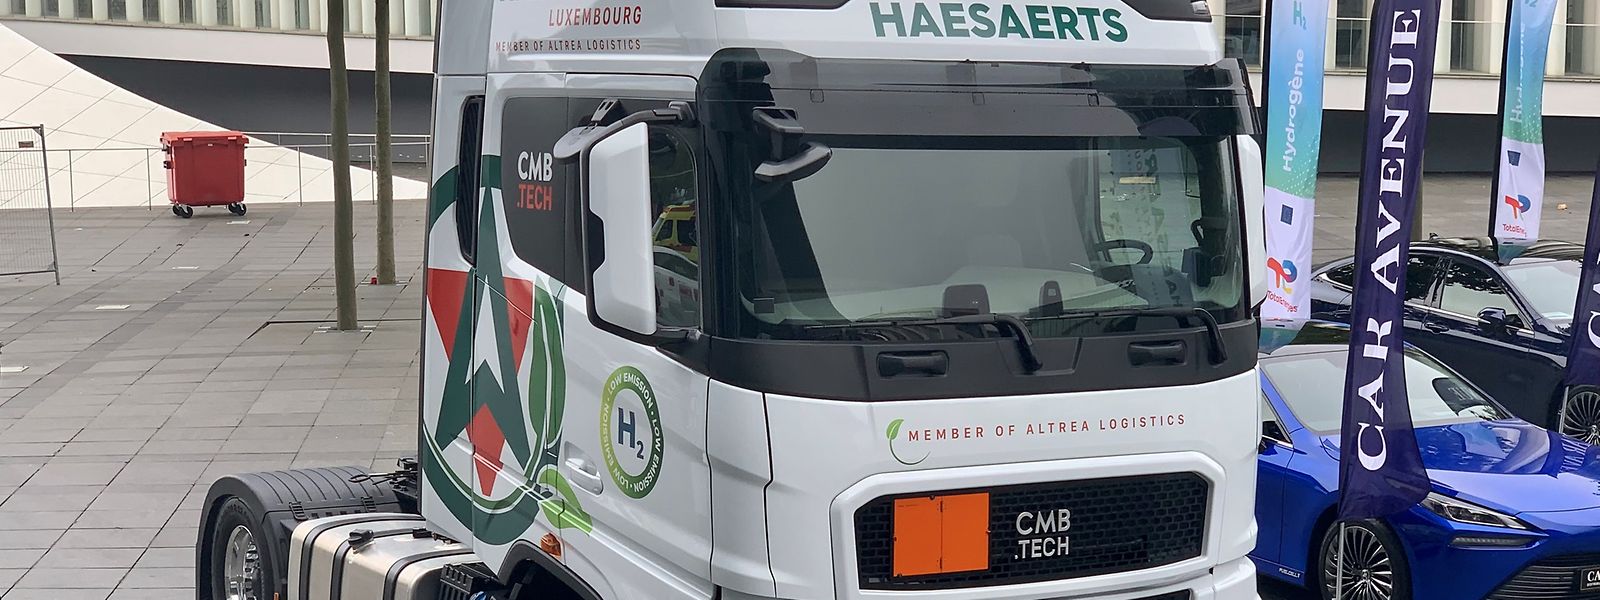 Haesaerts, transporteur routier luxembourgeois, a profité de la conférence pour annoncer la mise en service de leur premier véhicule dual fuel carburant à l'hydrogène et au diesel. 